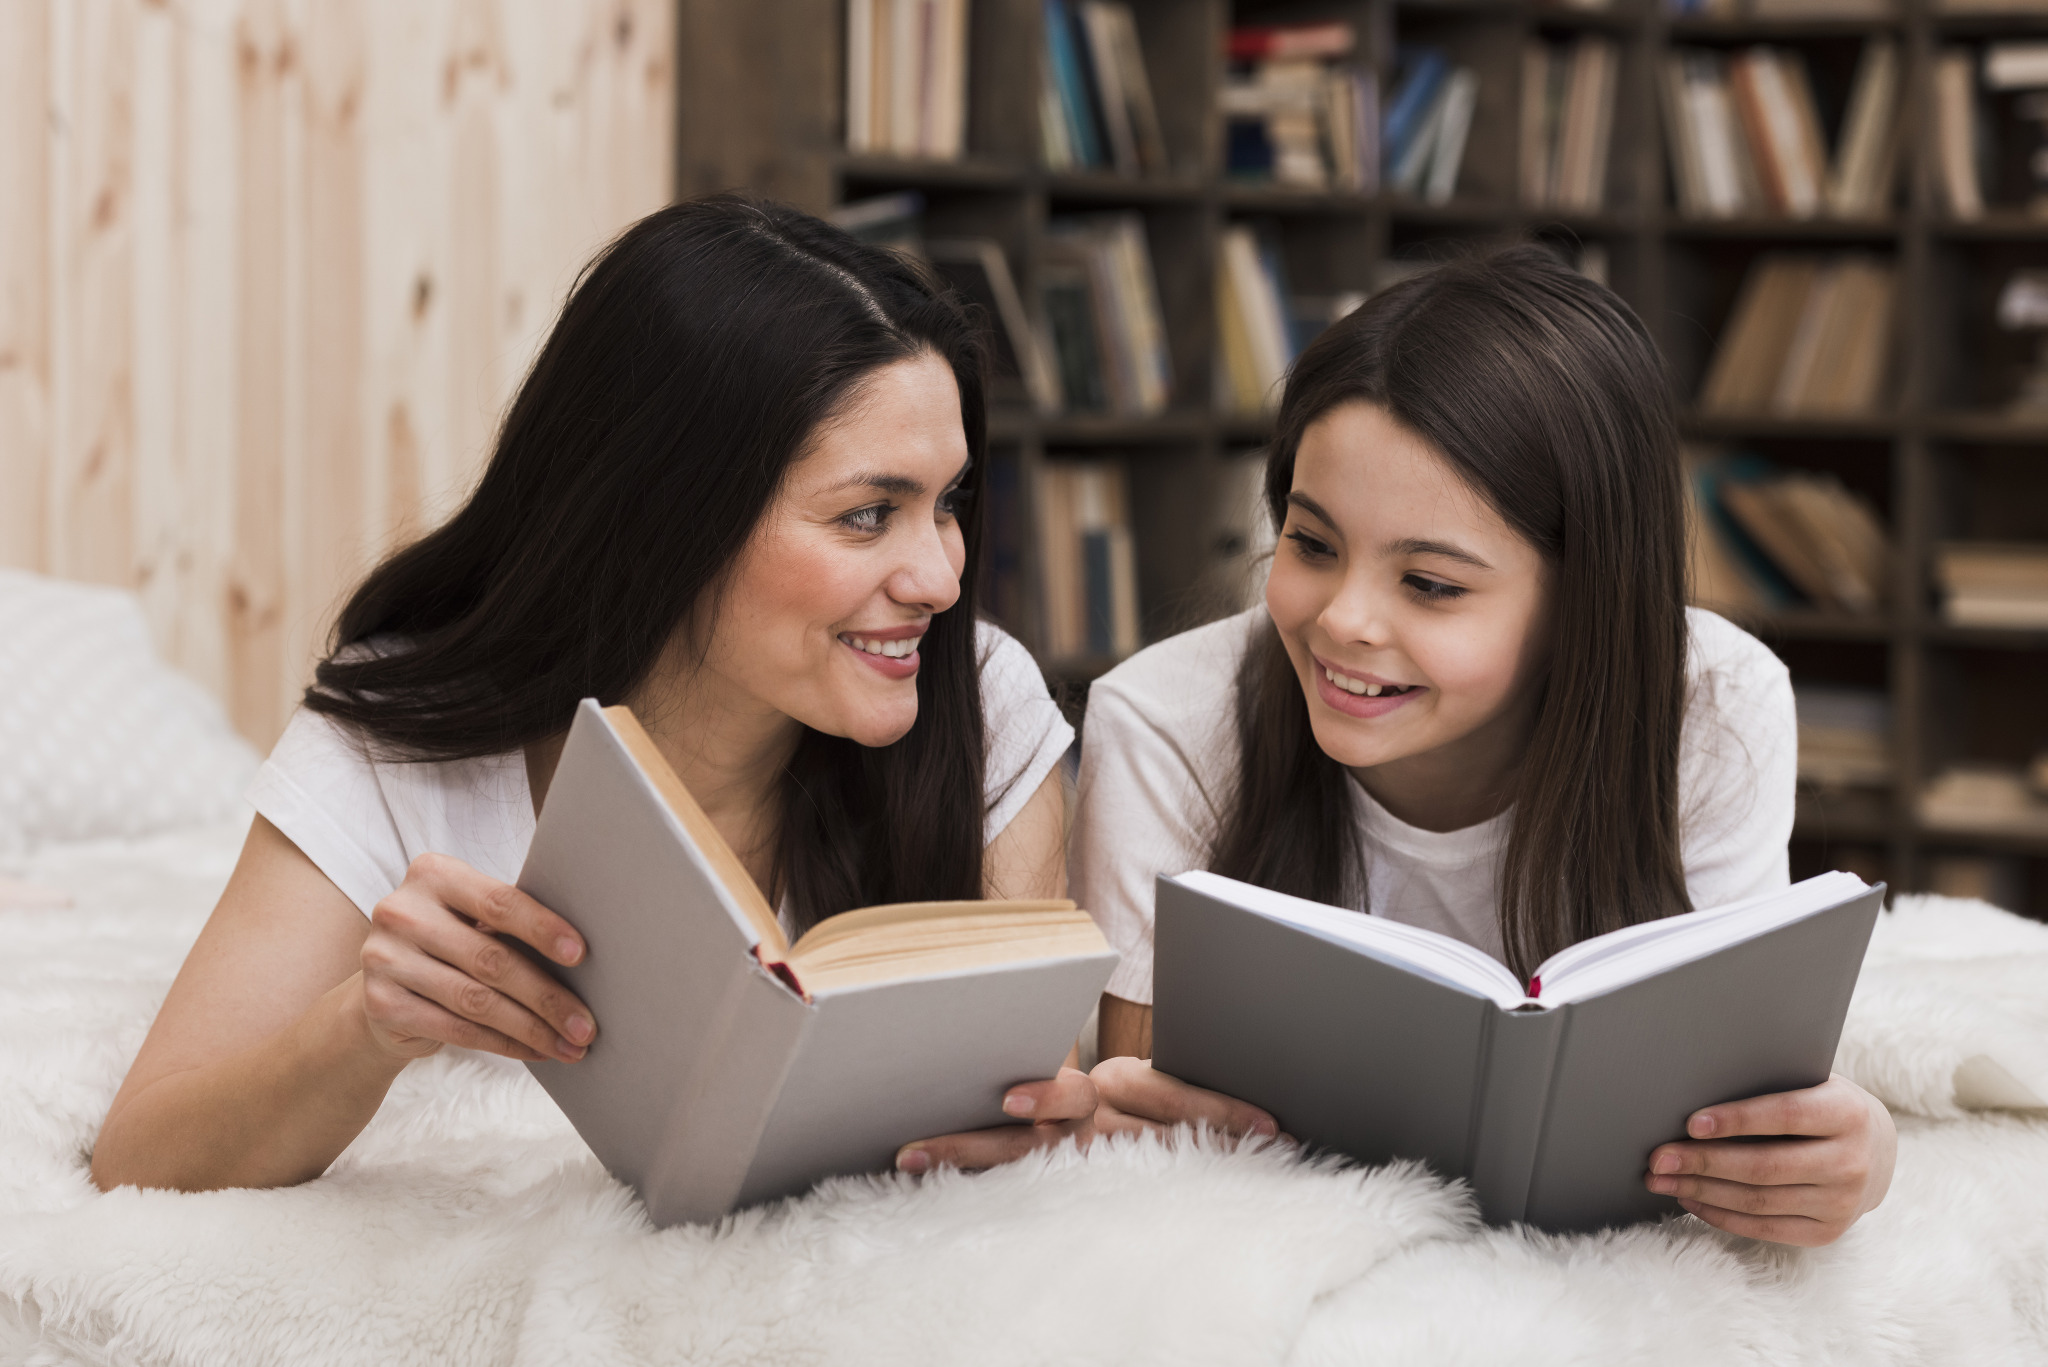 Tallinna Keskraamatukogus saavad lapsed harjutada eesti keeles lugemist koos lugemissõpradega